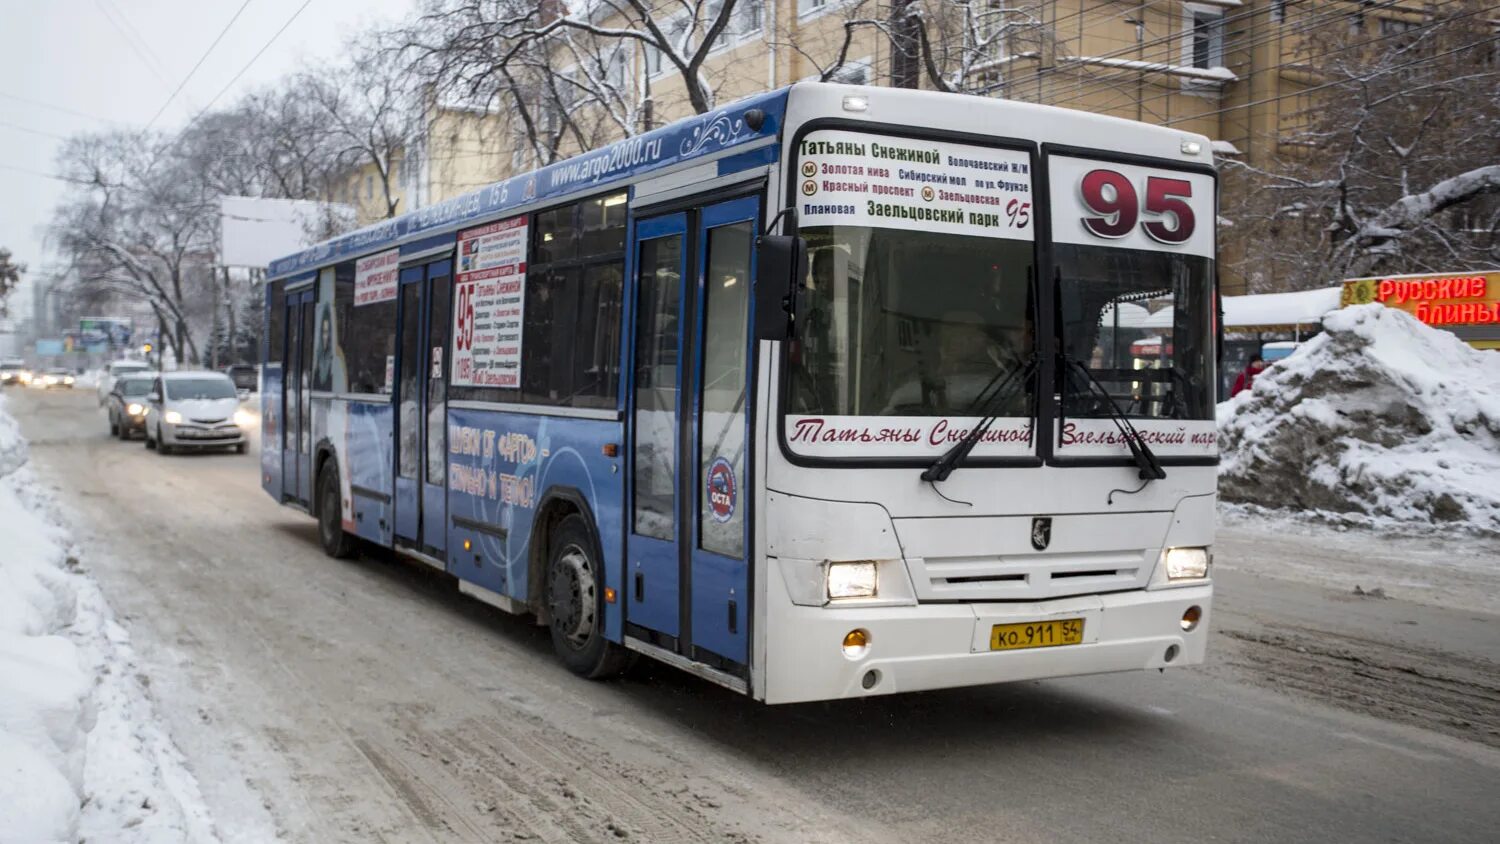 Автобус Новосибирск. 14 Автобус Новосибирск. 95 Автобус Новосибирск. Автобус Новосибирск зима.